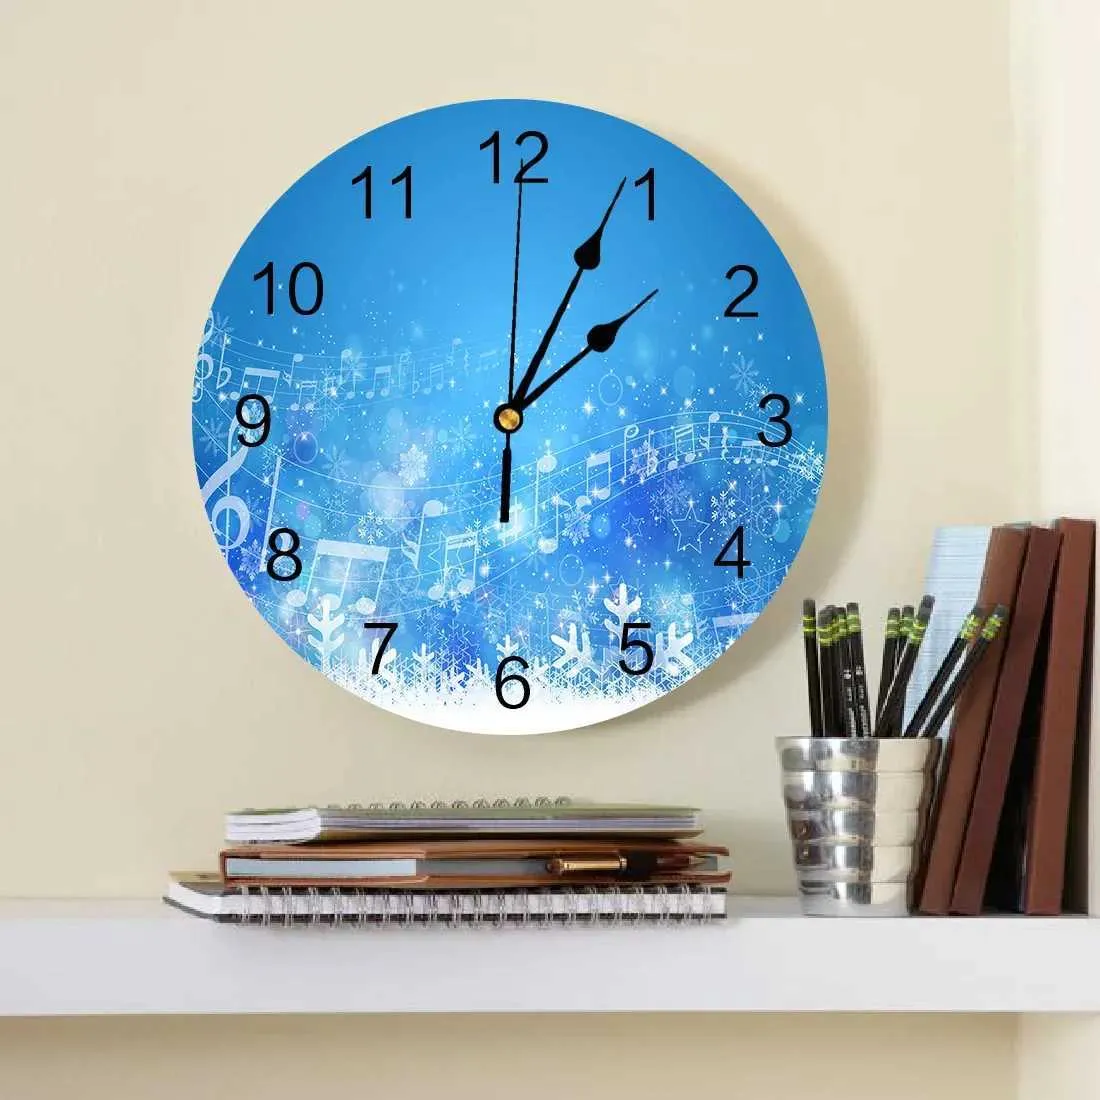 Настенные часы Рождественская музыка синяя зима белые снежинки декоративные круглые стены. Пользовательские часы. Дизайн без тика